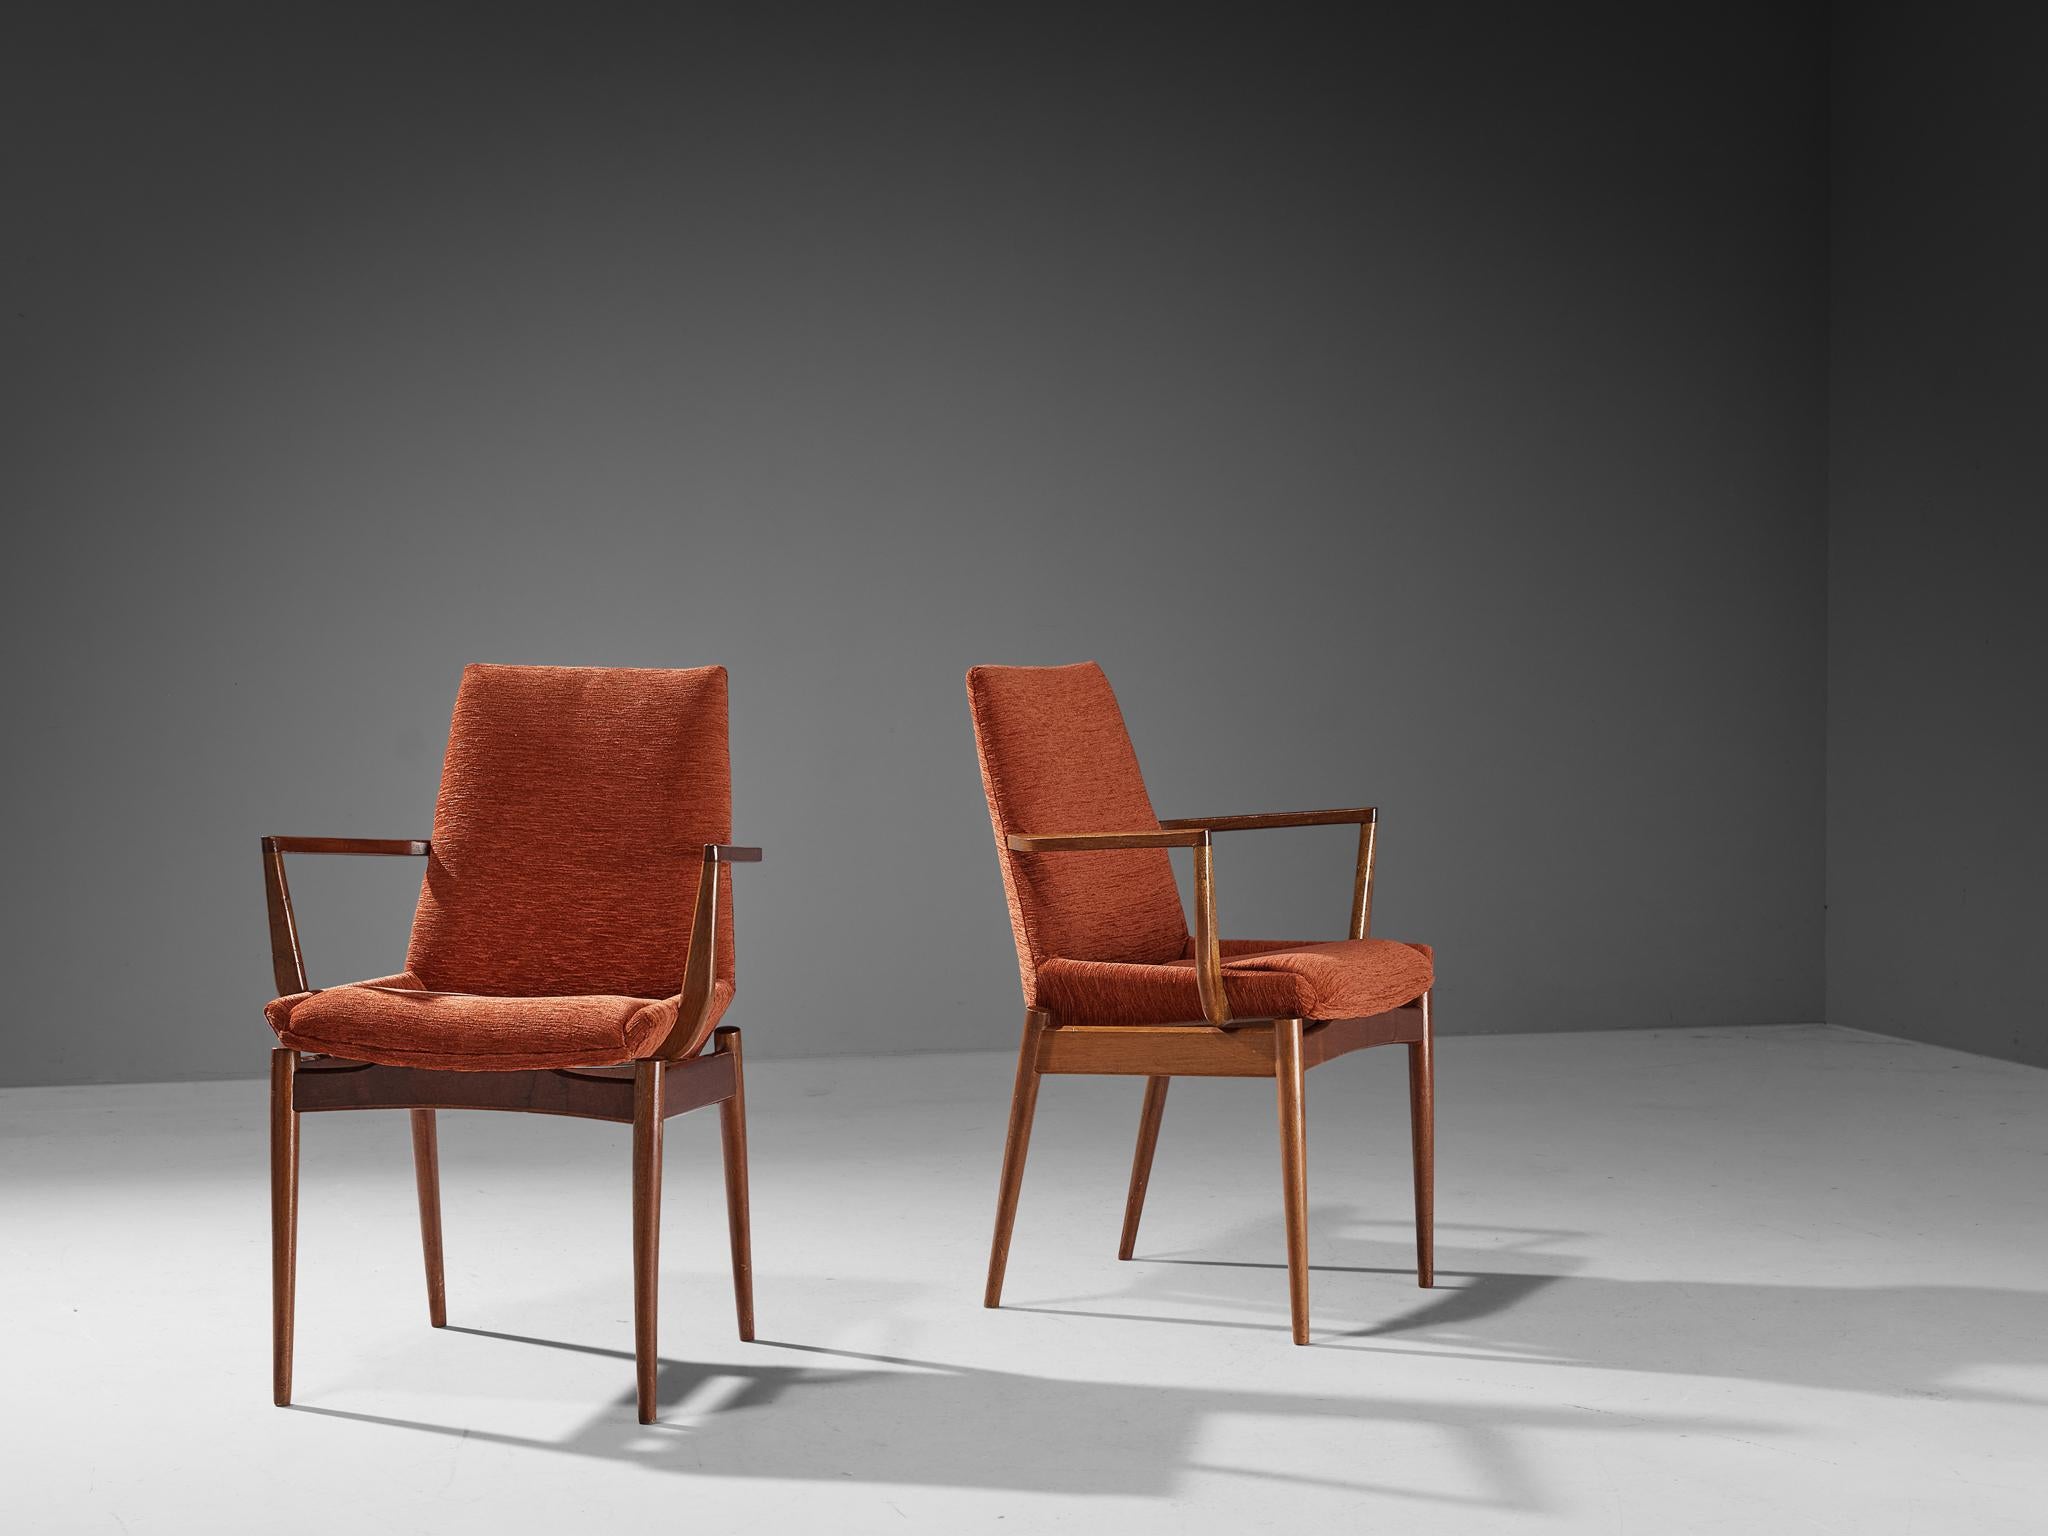 Robert Heritage pour Archie Shine, fauteuils, acajou, velours rouge, Royaume-Uni, années 1960.

Ce design est sensuel, sculptural et élégant. Le design se caractérise par un dossier haut et sculpté. Les pieds courbes et effilés confèrent à